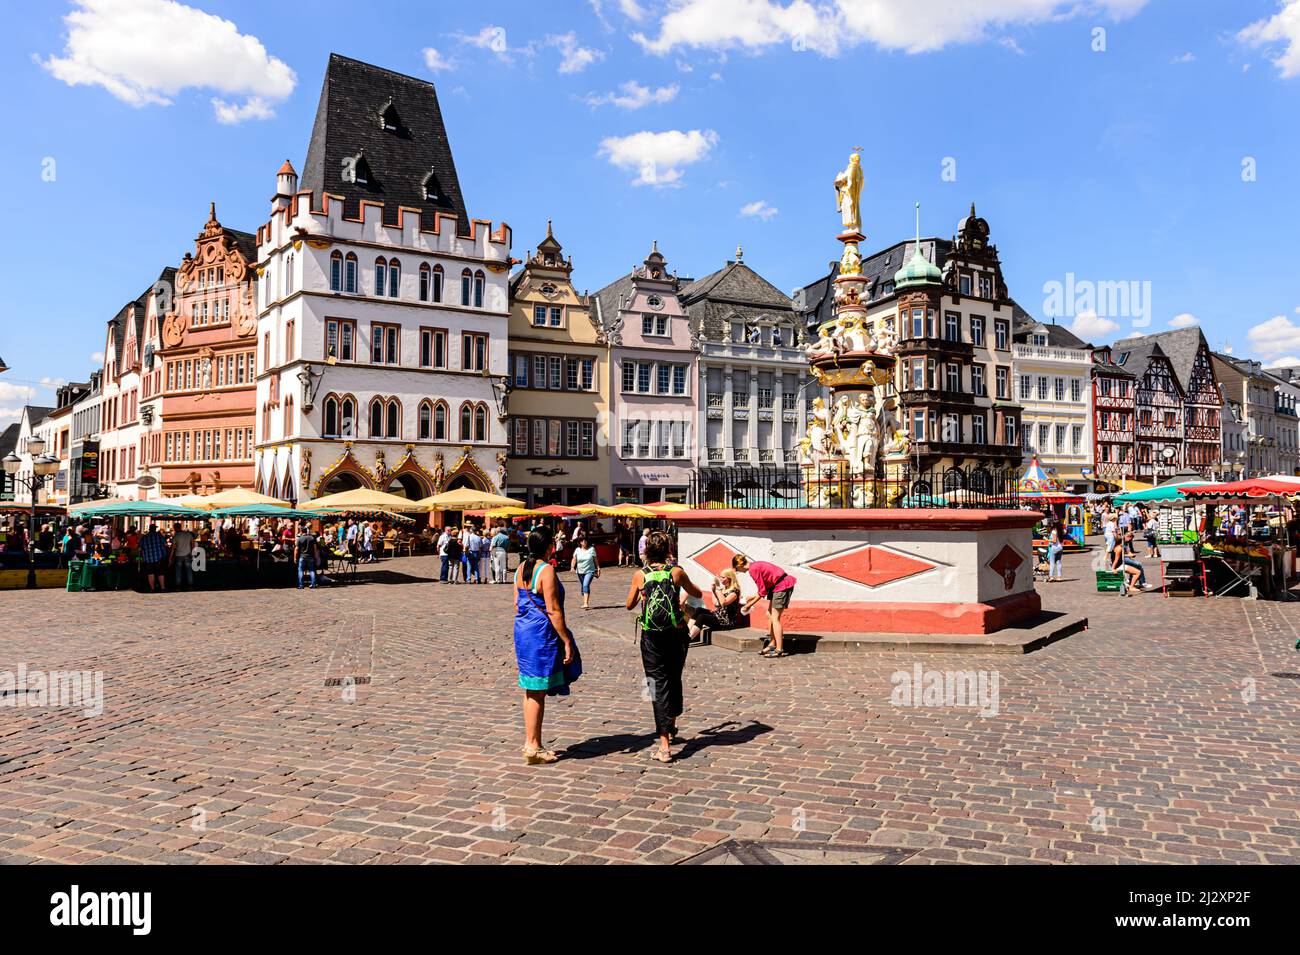 Trier, Alemania, 01 de agosto de 2015: Algunas personas frente a las casas tradicionales en el mercado de la ciudad vieja Foto de stock